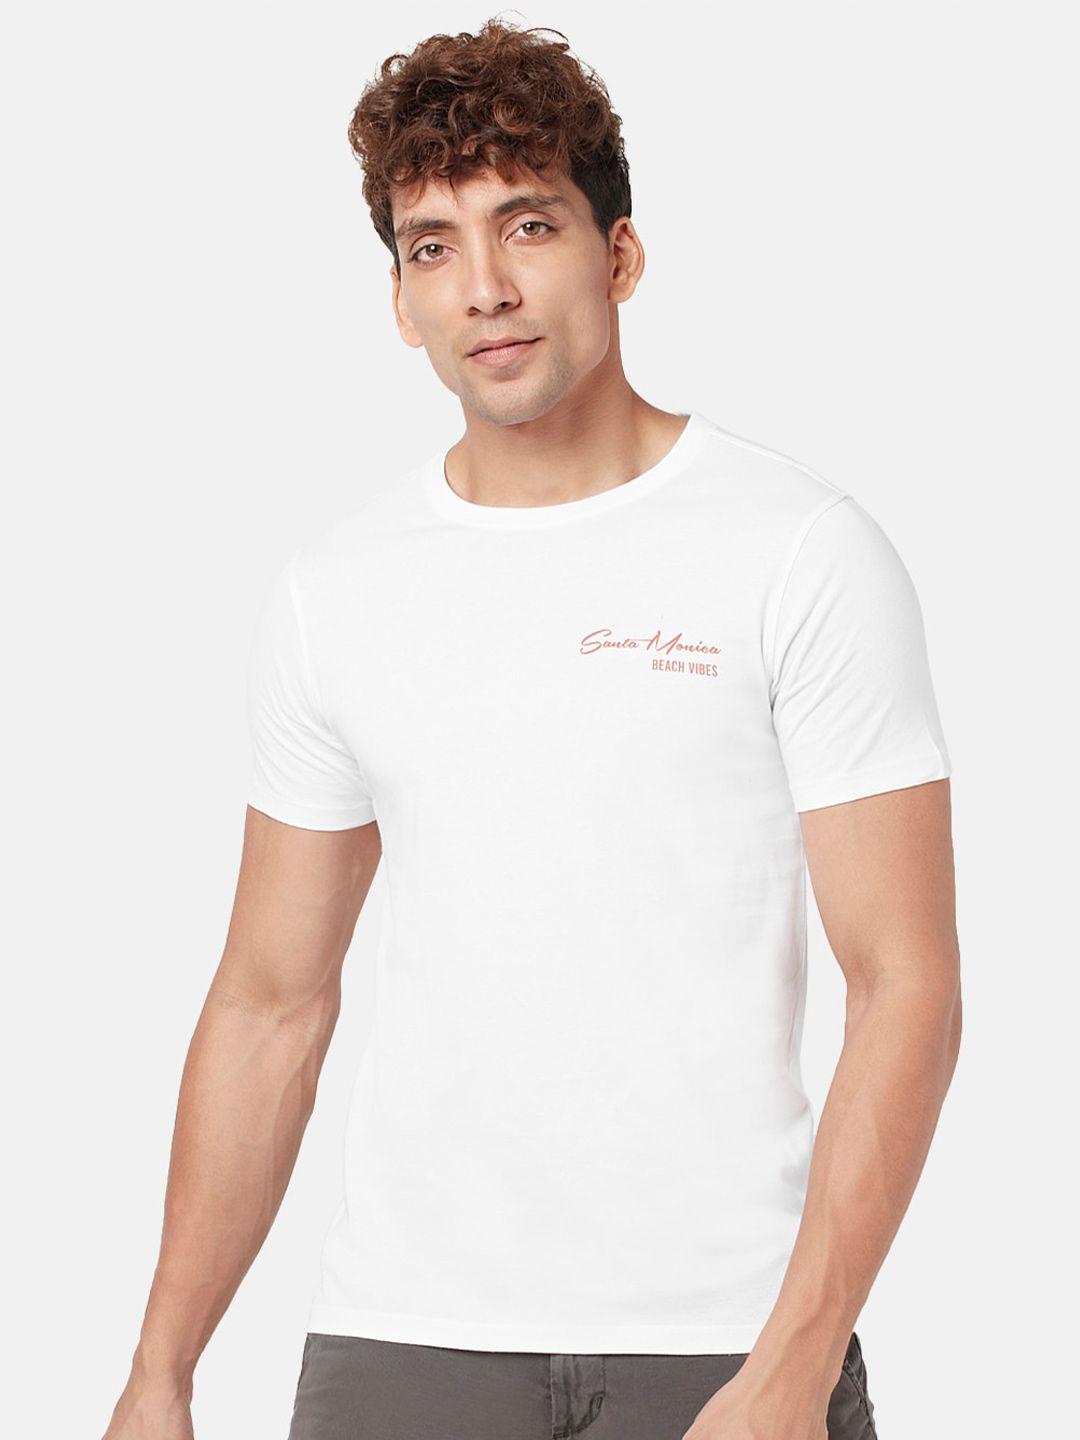 urban ranger by pantaloons men printed cotton t-shirt